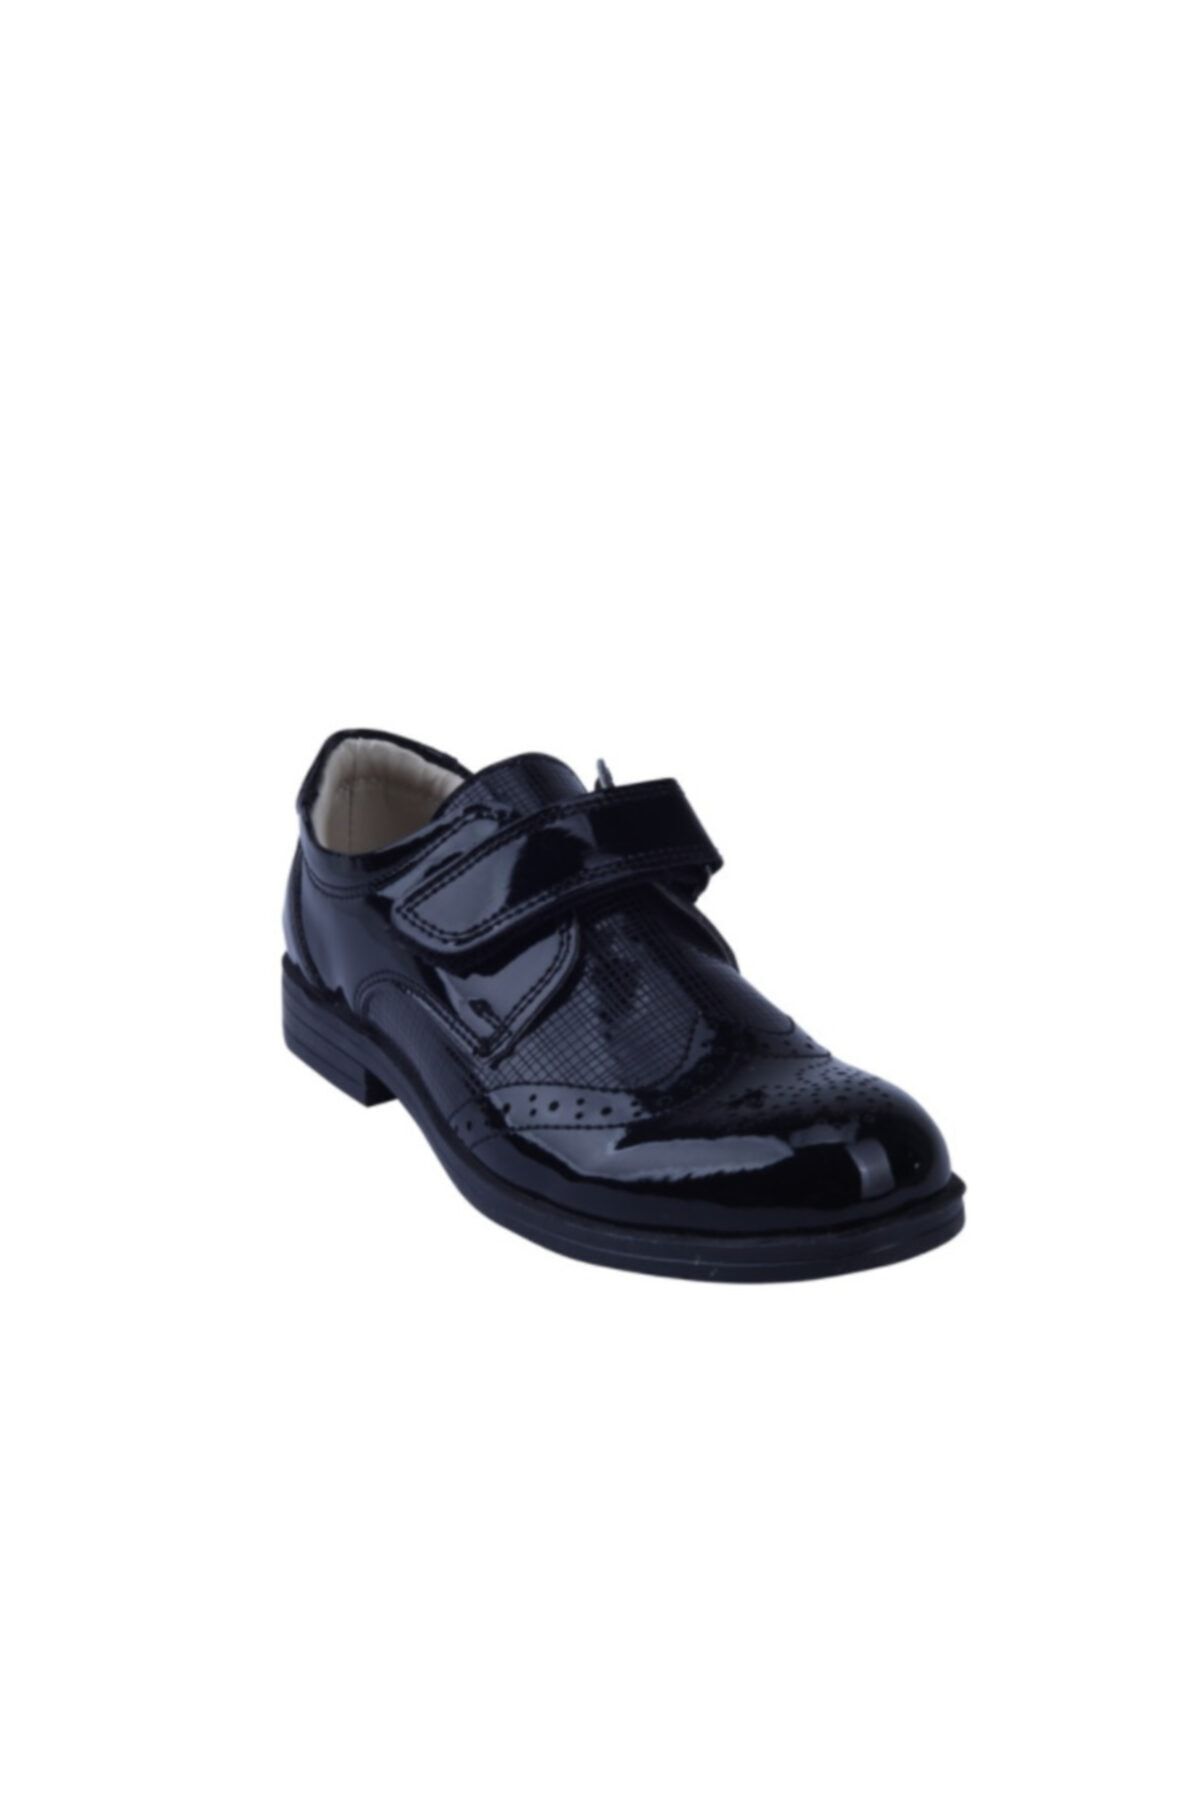 Toddler 0414 Siyah Rugan Çocuk Klasik Ayakkabı 31-36